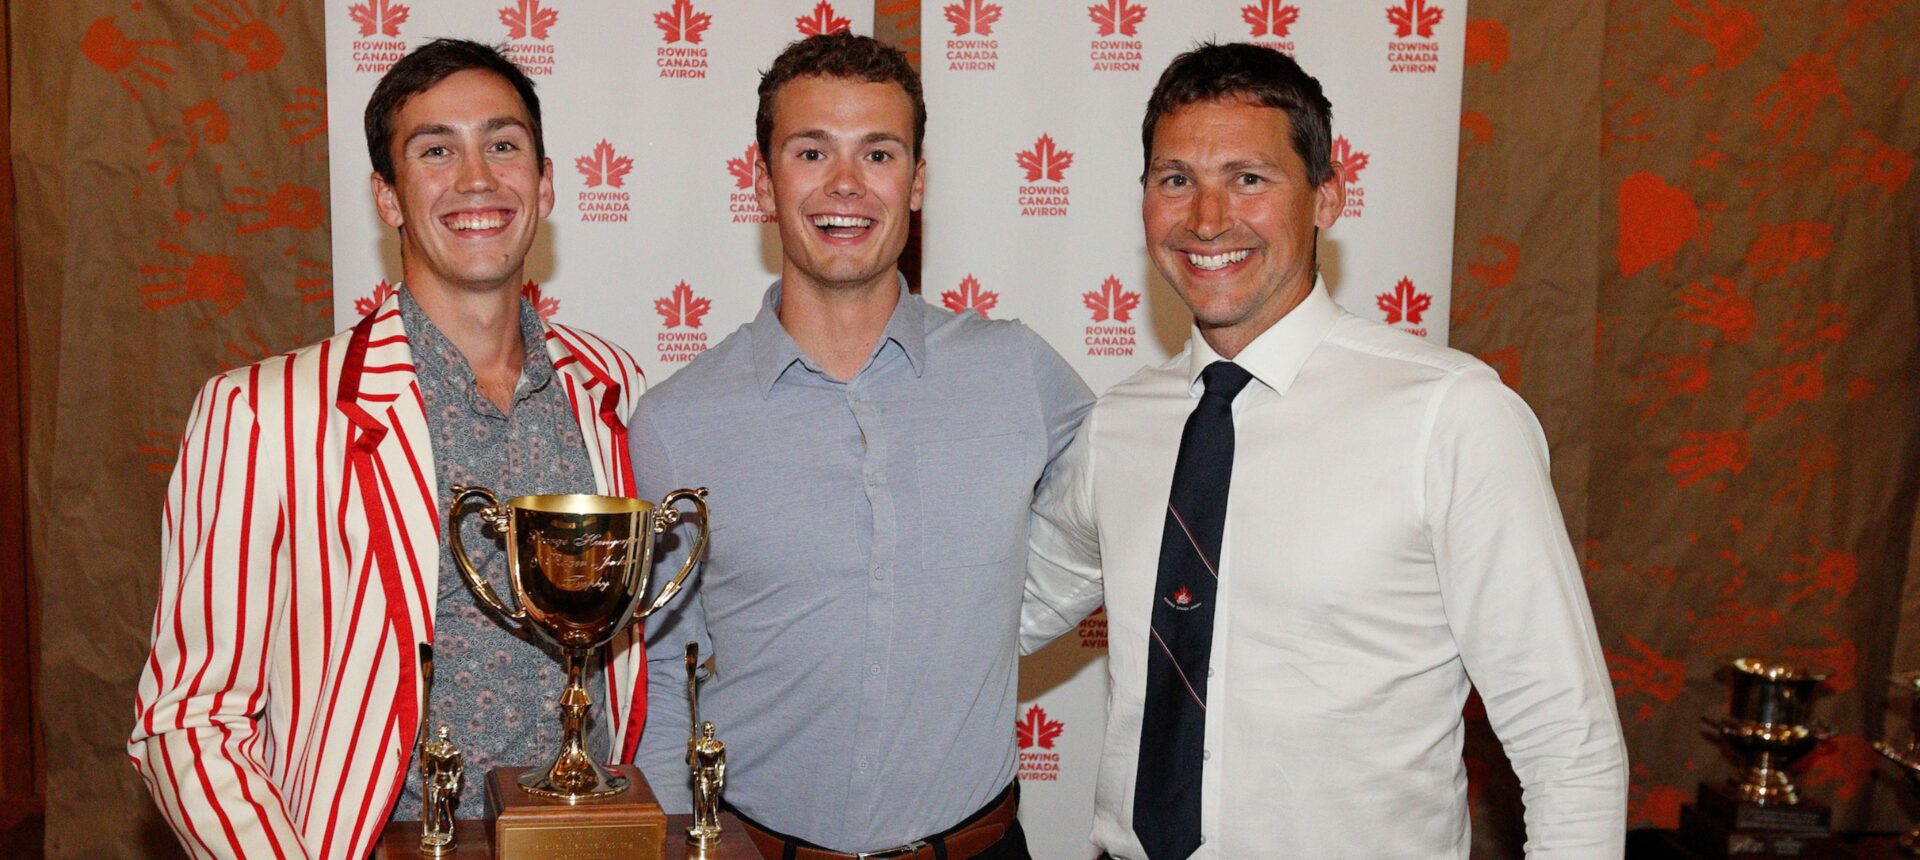 Célébration des anciens de Rowing Canada Aviron aux Championnats nationaux d’aviron